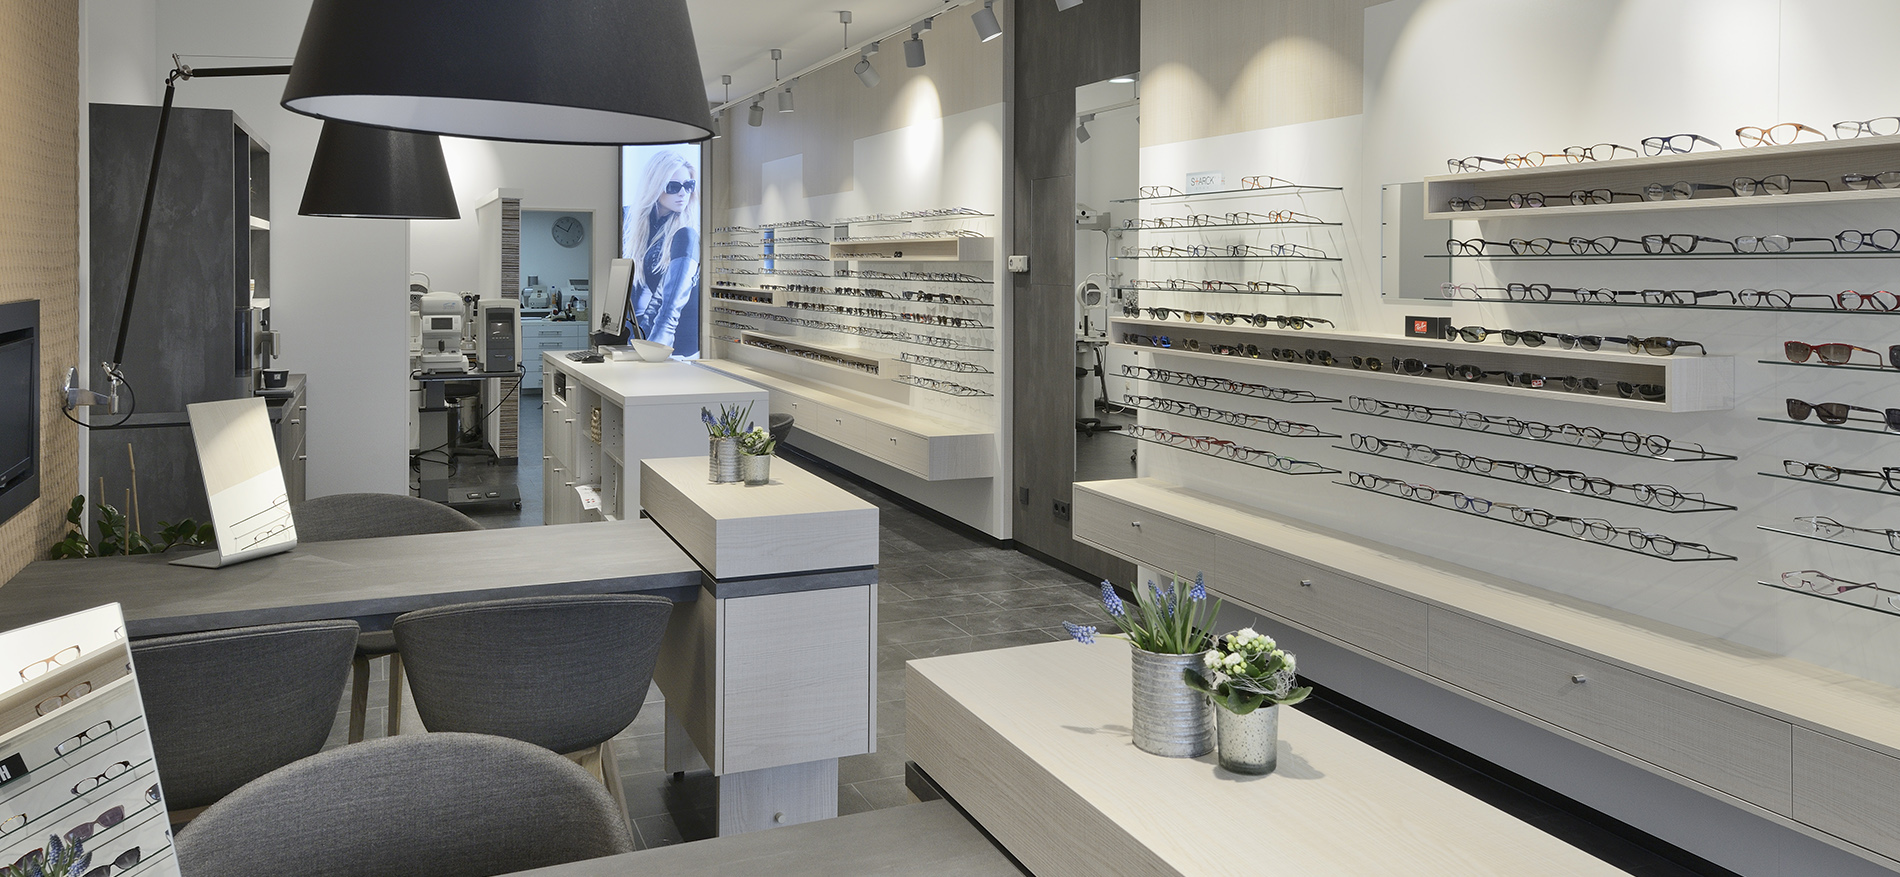 Klöckner Optik fully renovated shop interior - Optician